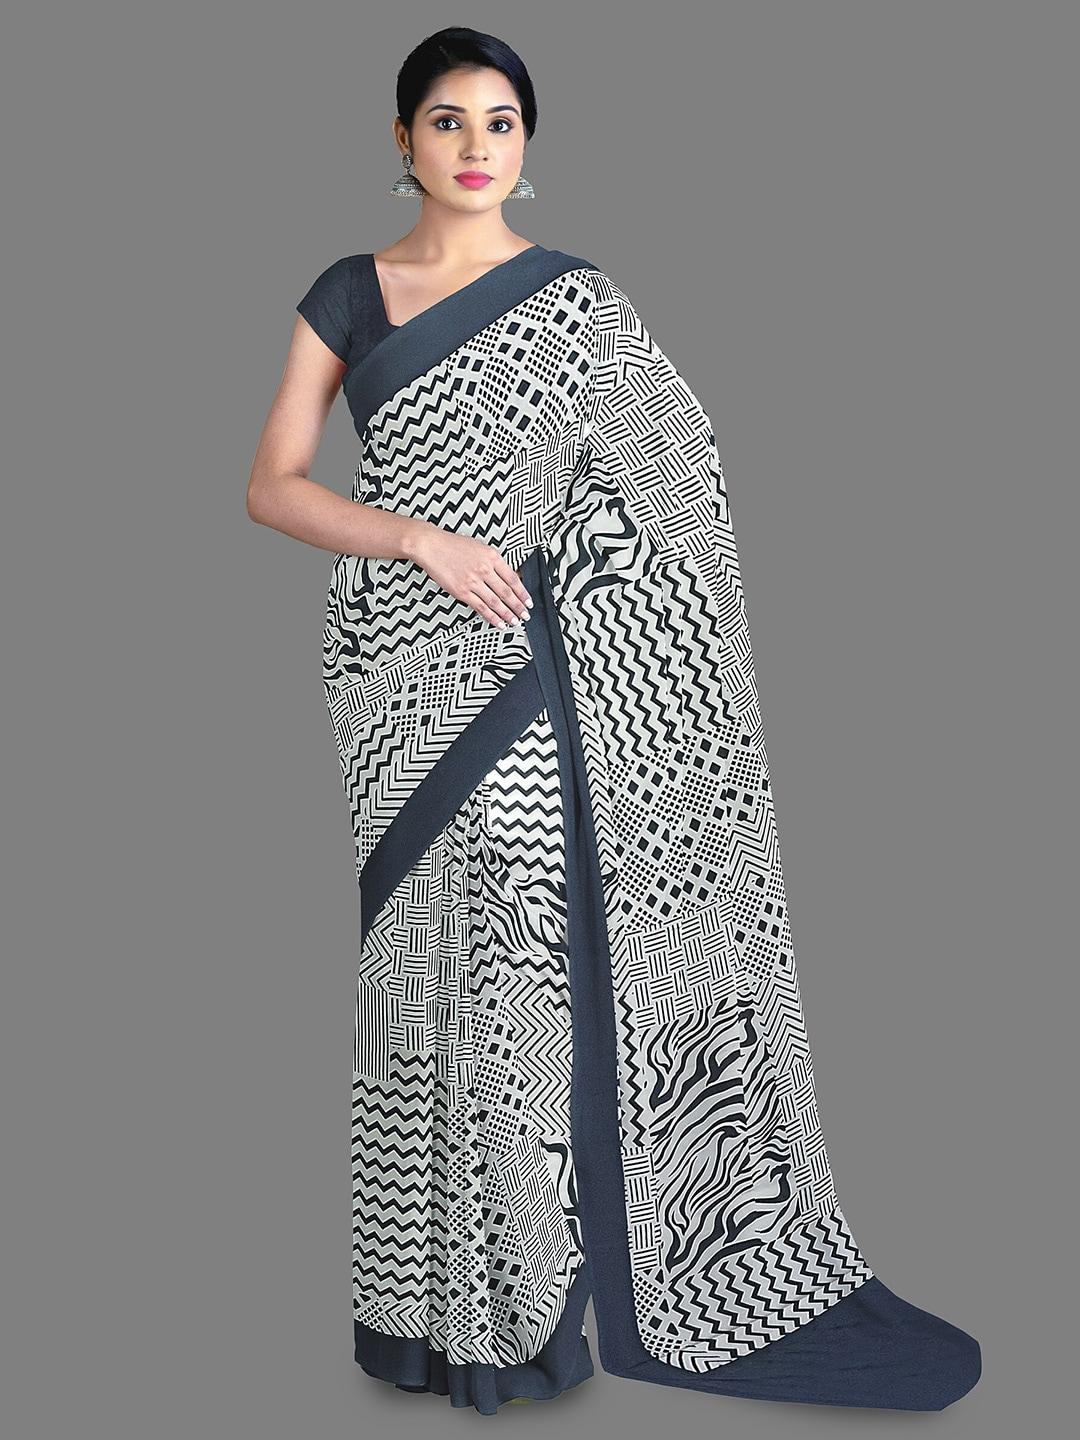 The Chennai Silks Geometric Printed Saree